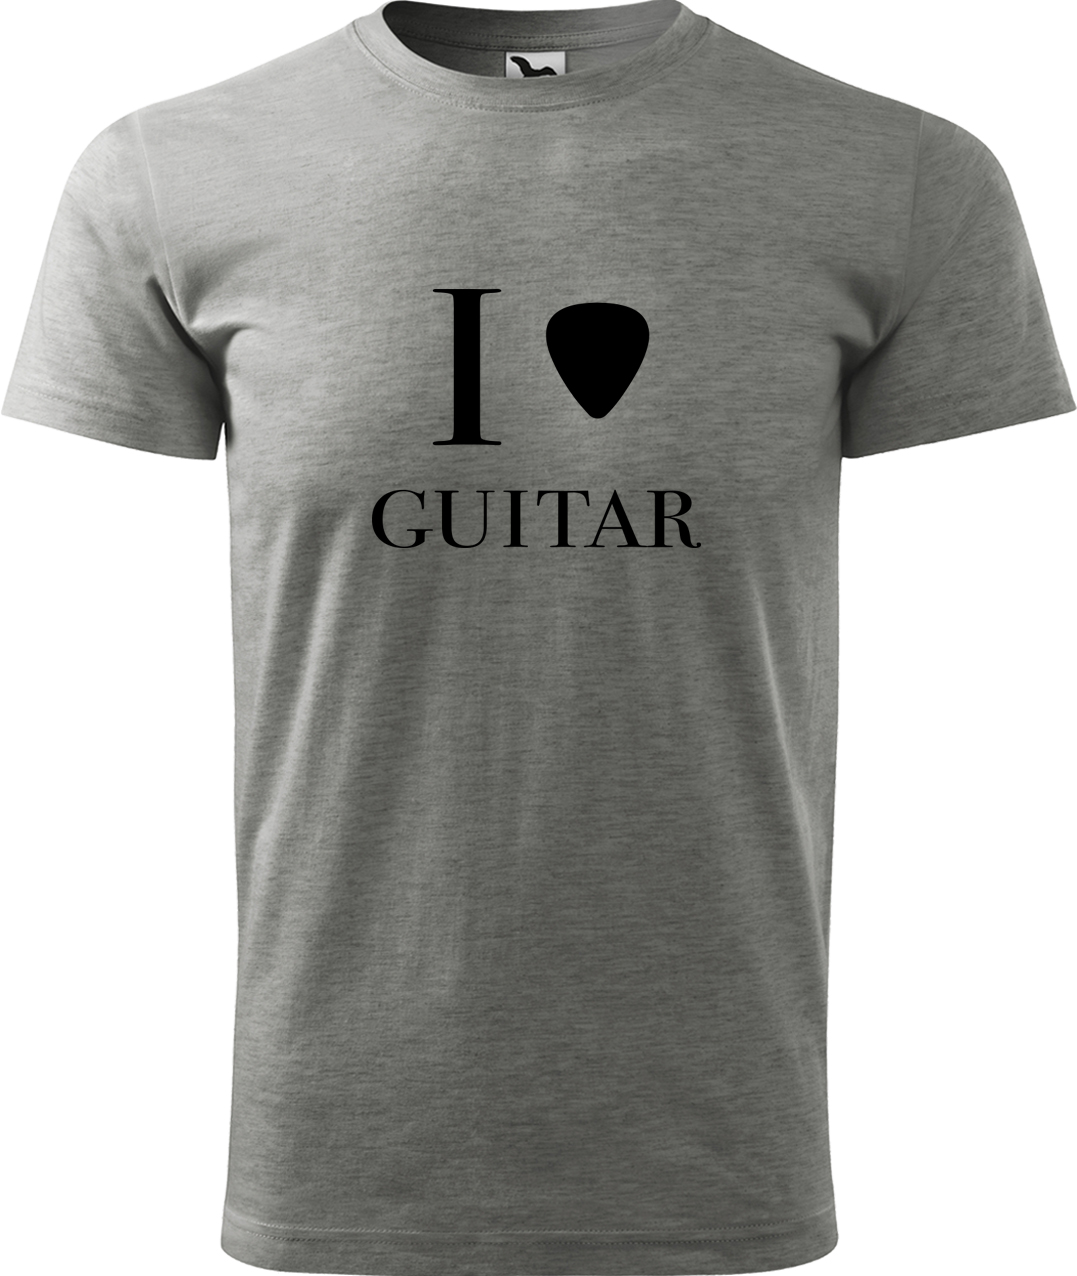 Pánské tričko s kytarou - I love guitar Velikost: S, Barva: Tmavě šedý melír (12), Střih: pánský